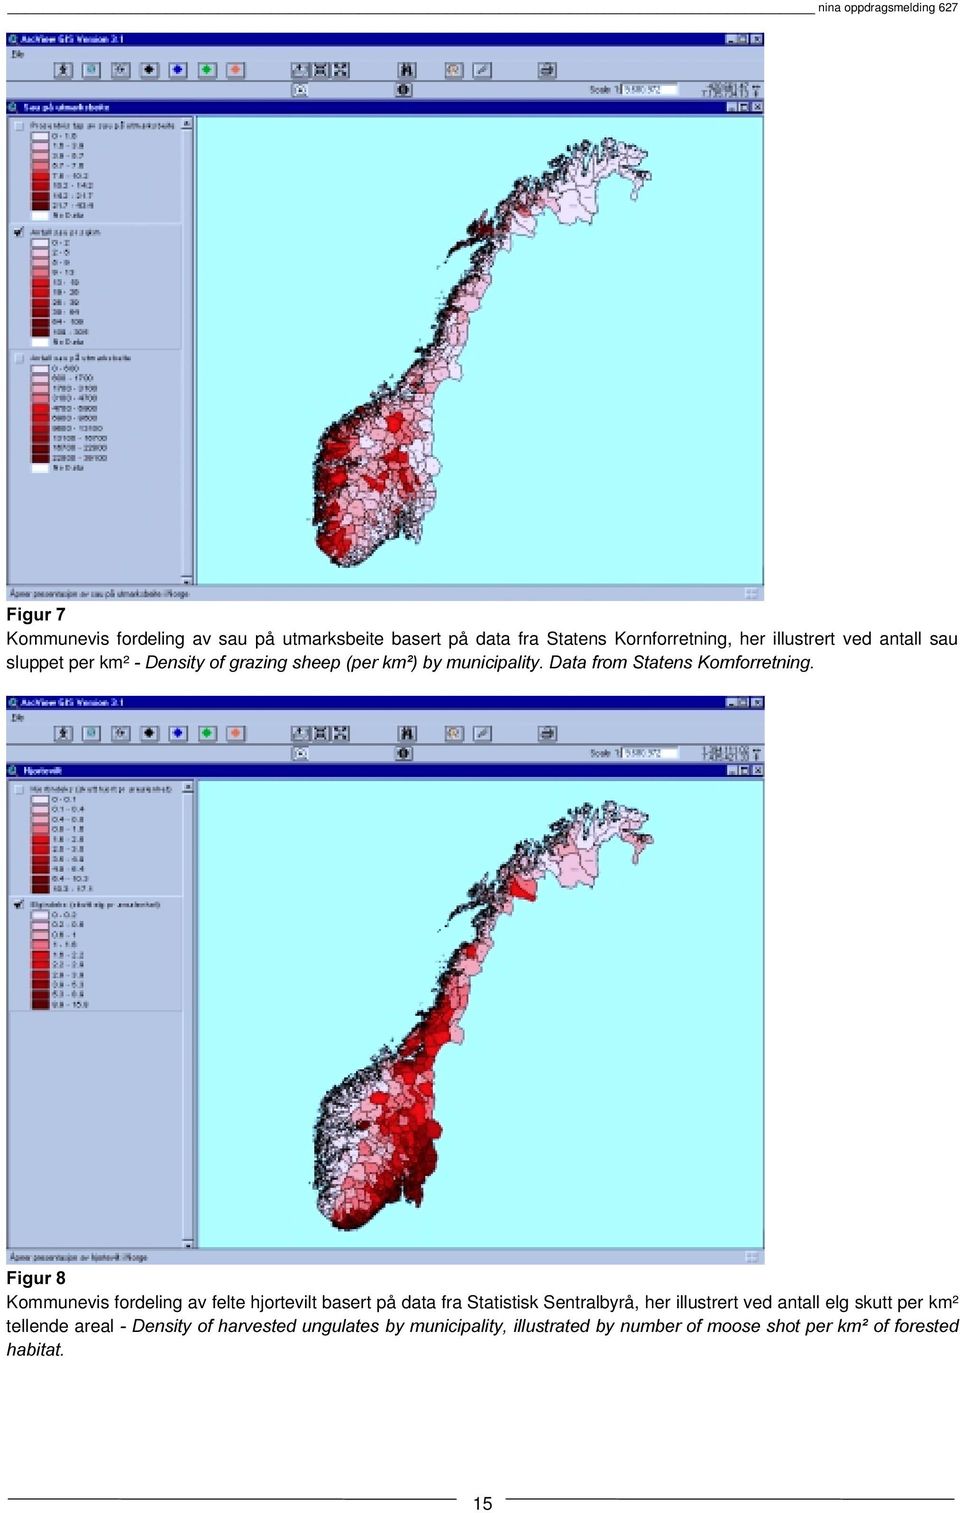 ruqiruuhwqlqj Kommunevis fordeling av felte hjortevilt basert på data fra Statistisk Sentralbyrå, her illustrert ved